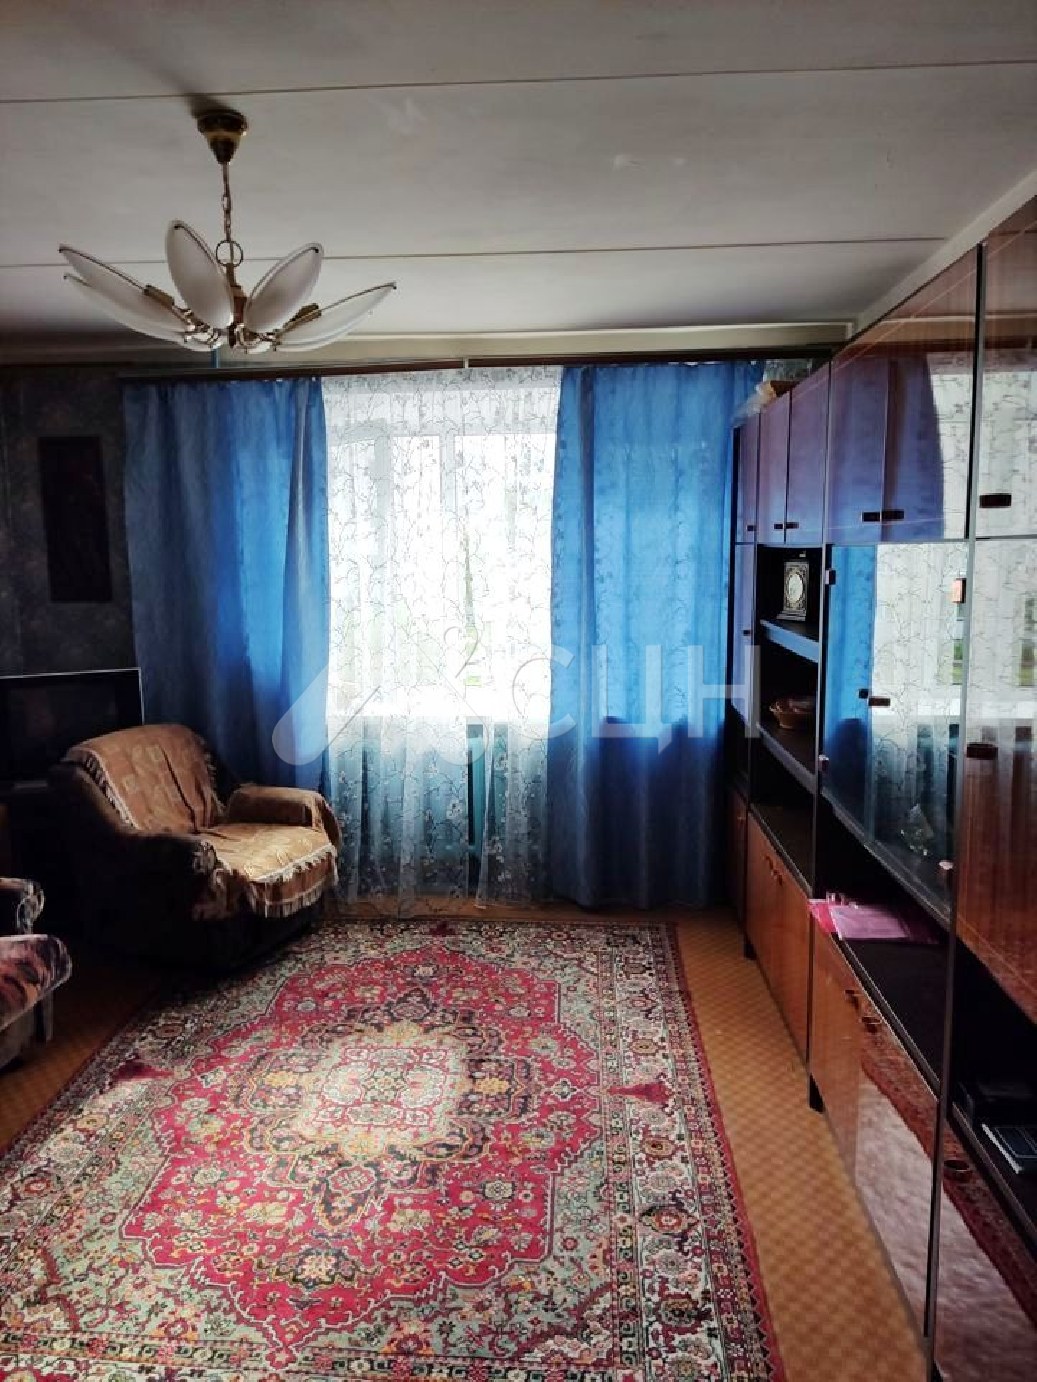 дома в сарове
: Г. Саров, улица Некрасова, 11, 3-комн квартира, этаж 2 из 9, продажа.